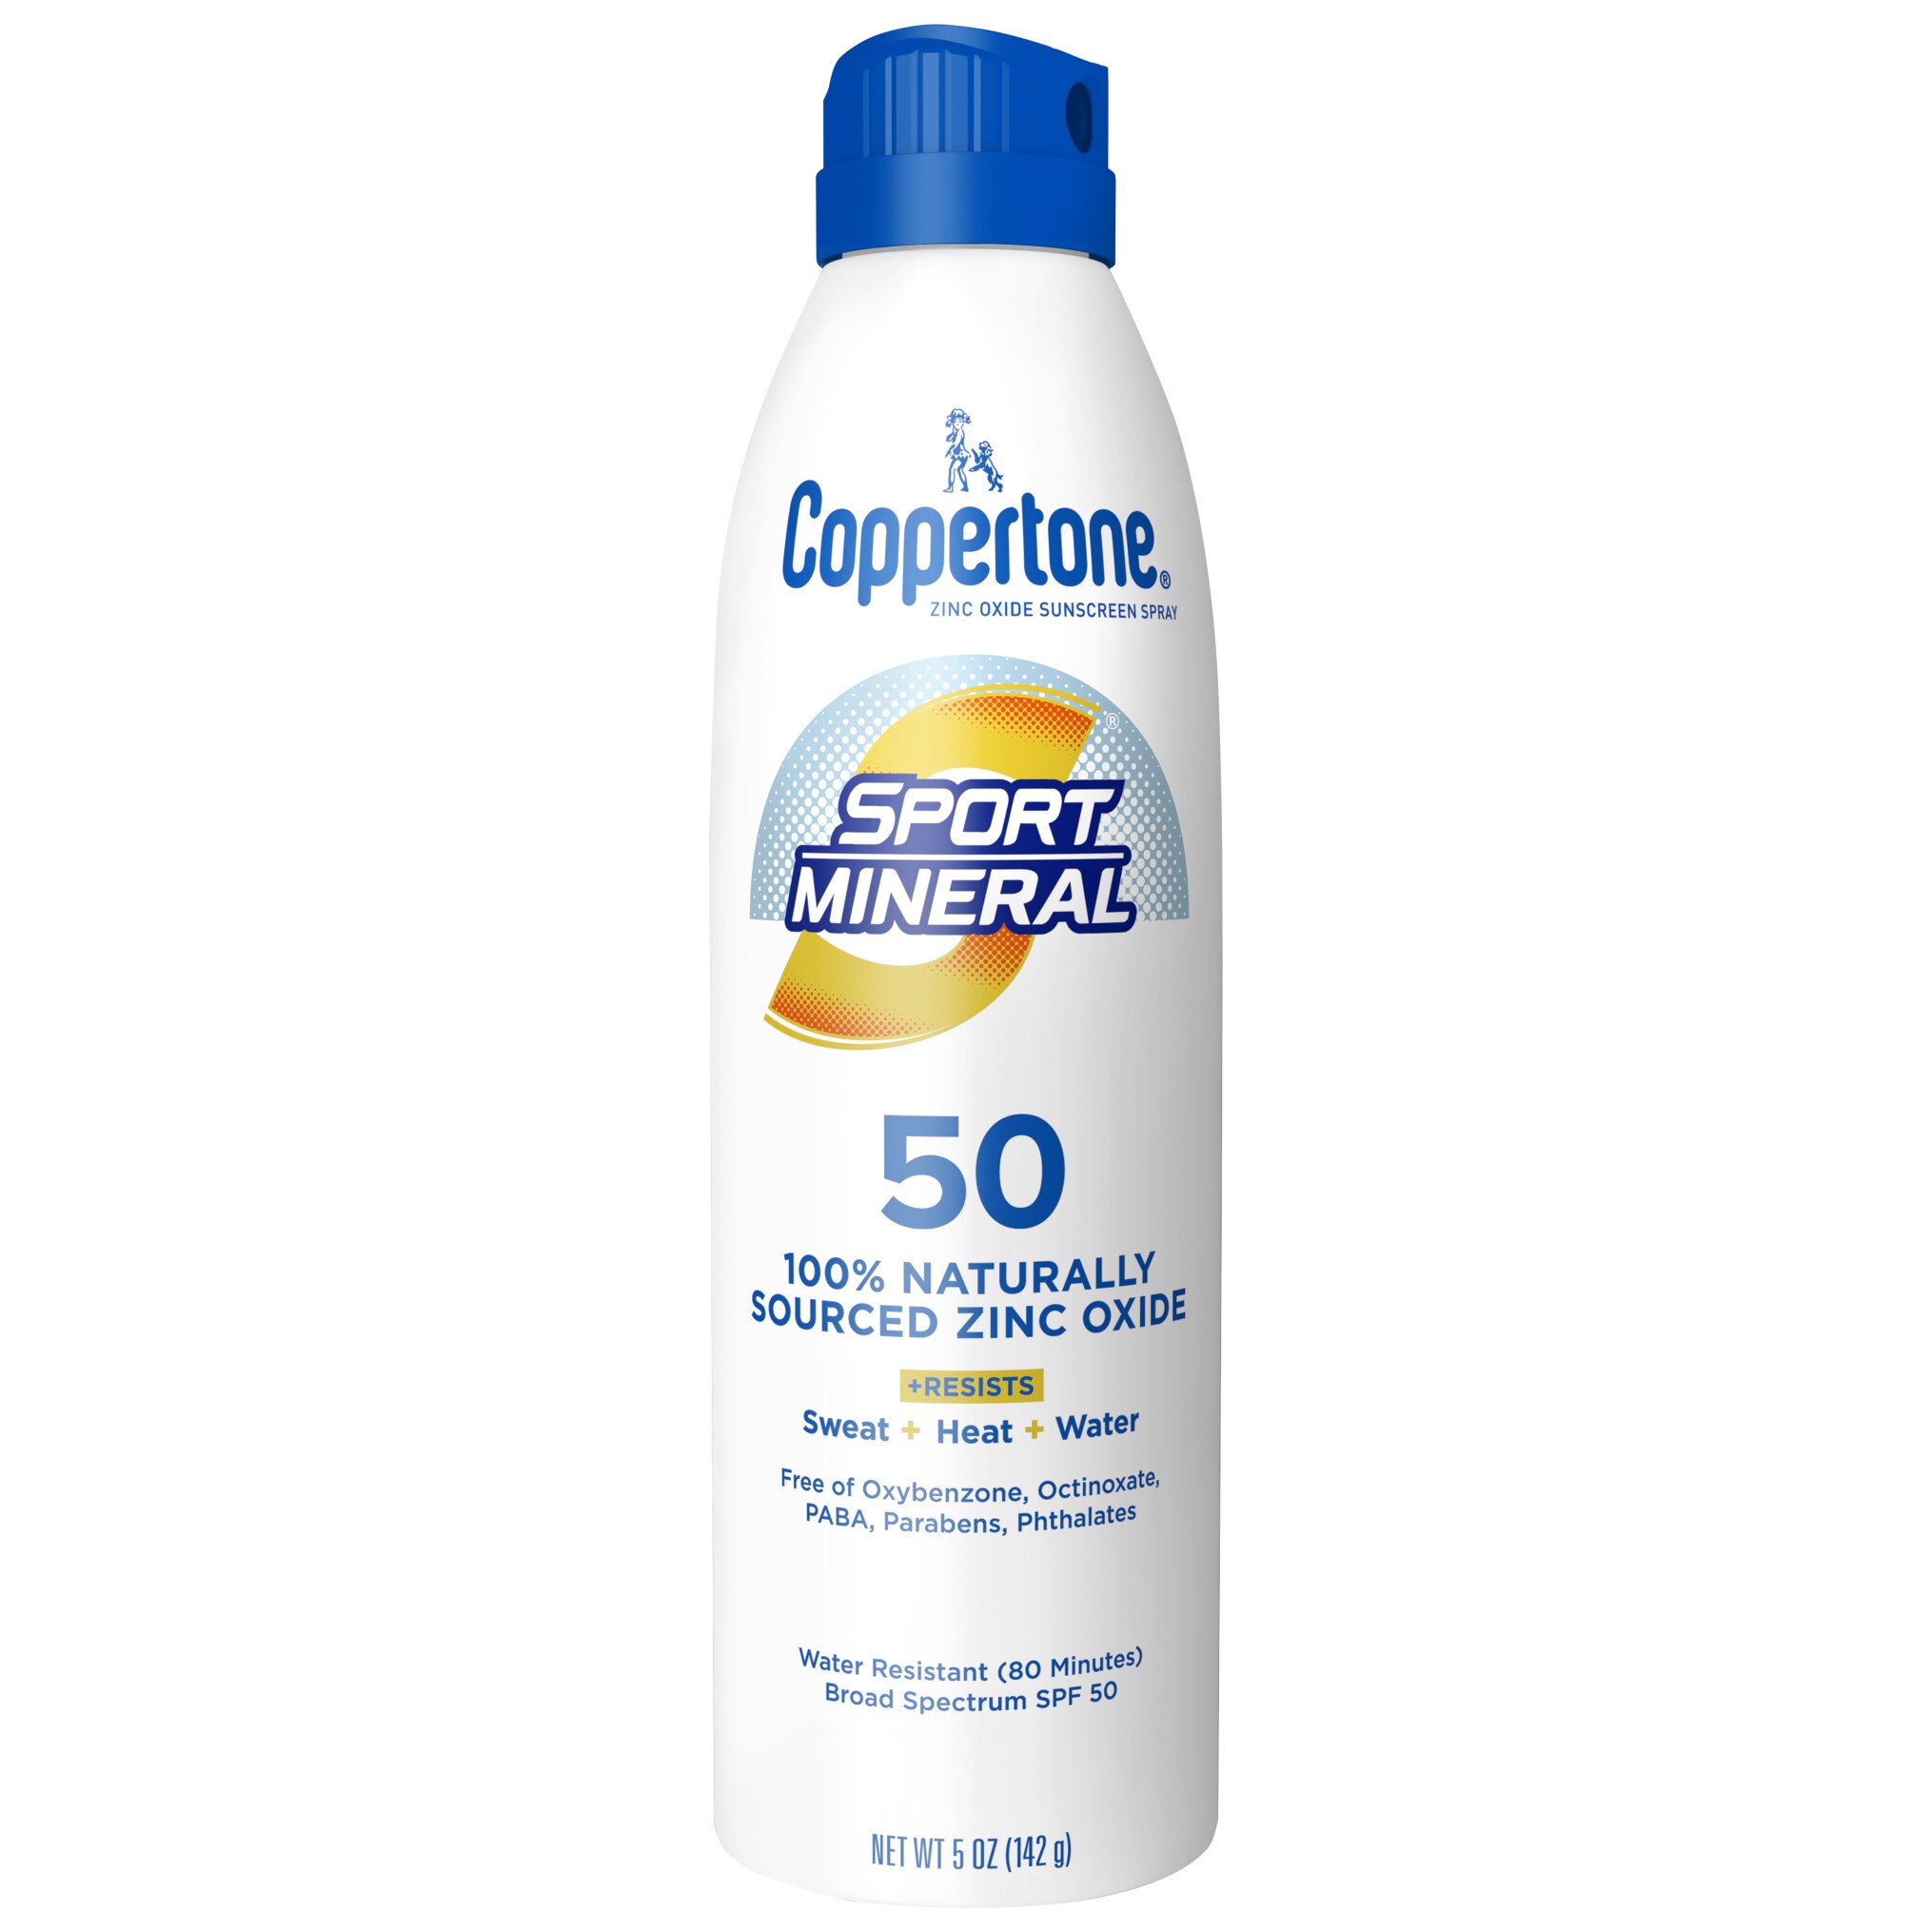 Coppertone Sport Mineral Sunscreen Spray, SPF 50, 5 Oz , CVS